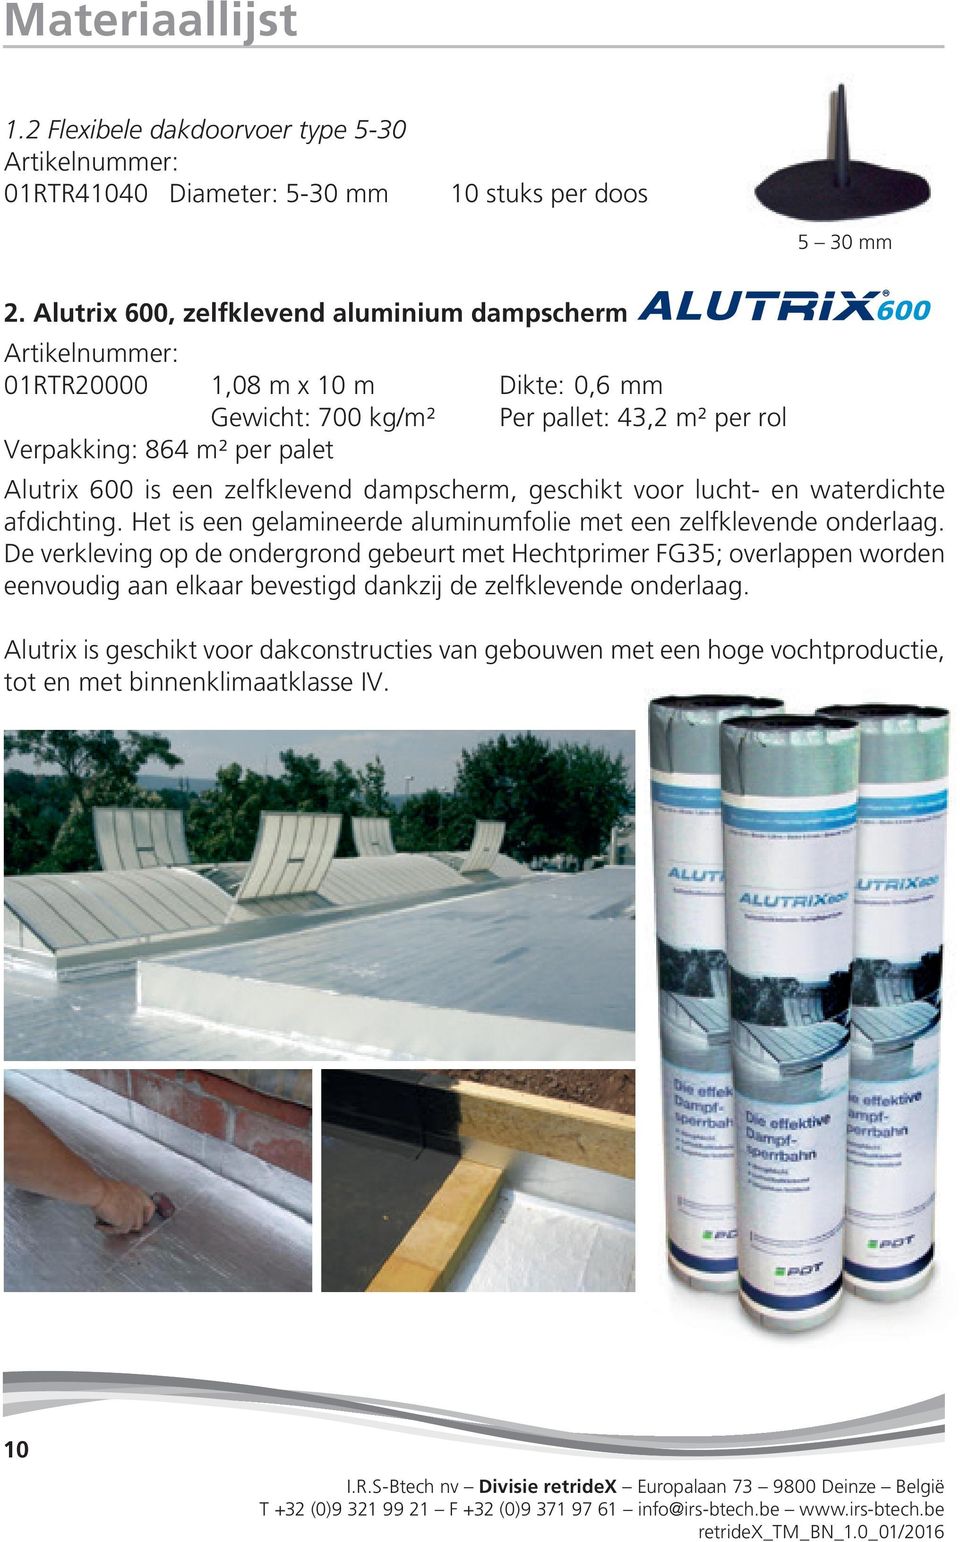 Alutrix 600 is een zelfklevend dampscherm, geschikt voor lucht- en waterdichte afdichting. Het is een gelamineerde aluminumfolie met een zelfklevende onderlaag.